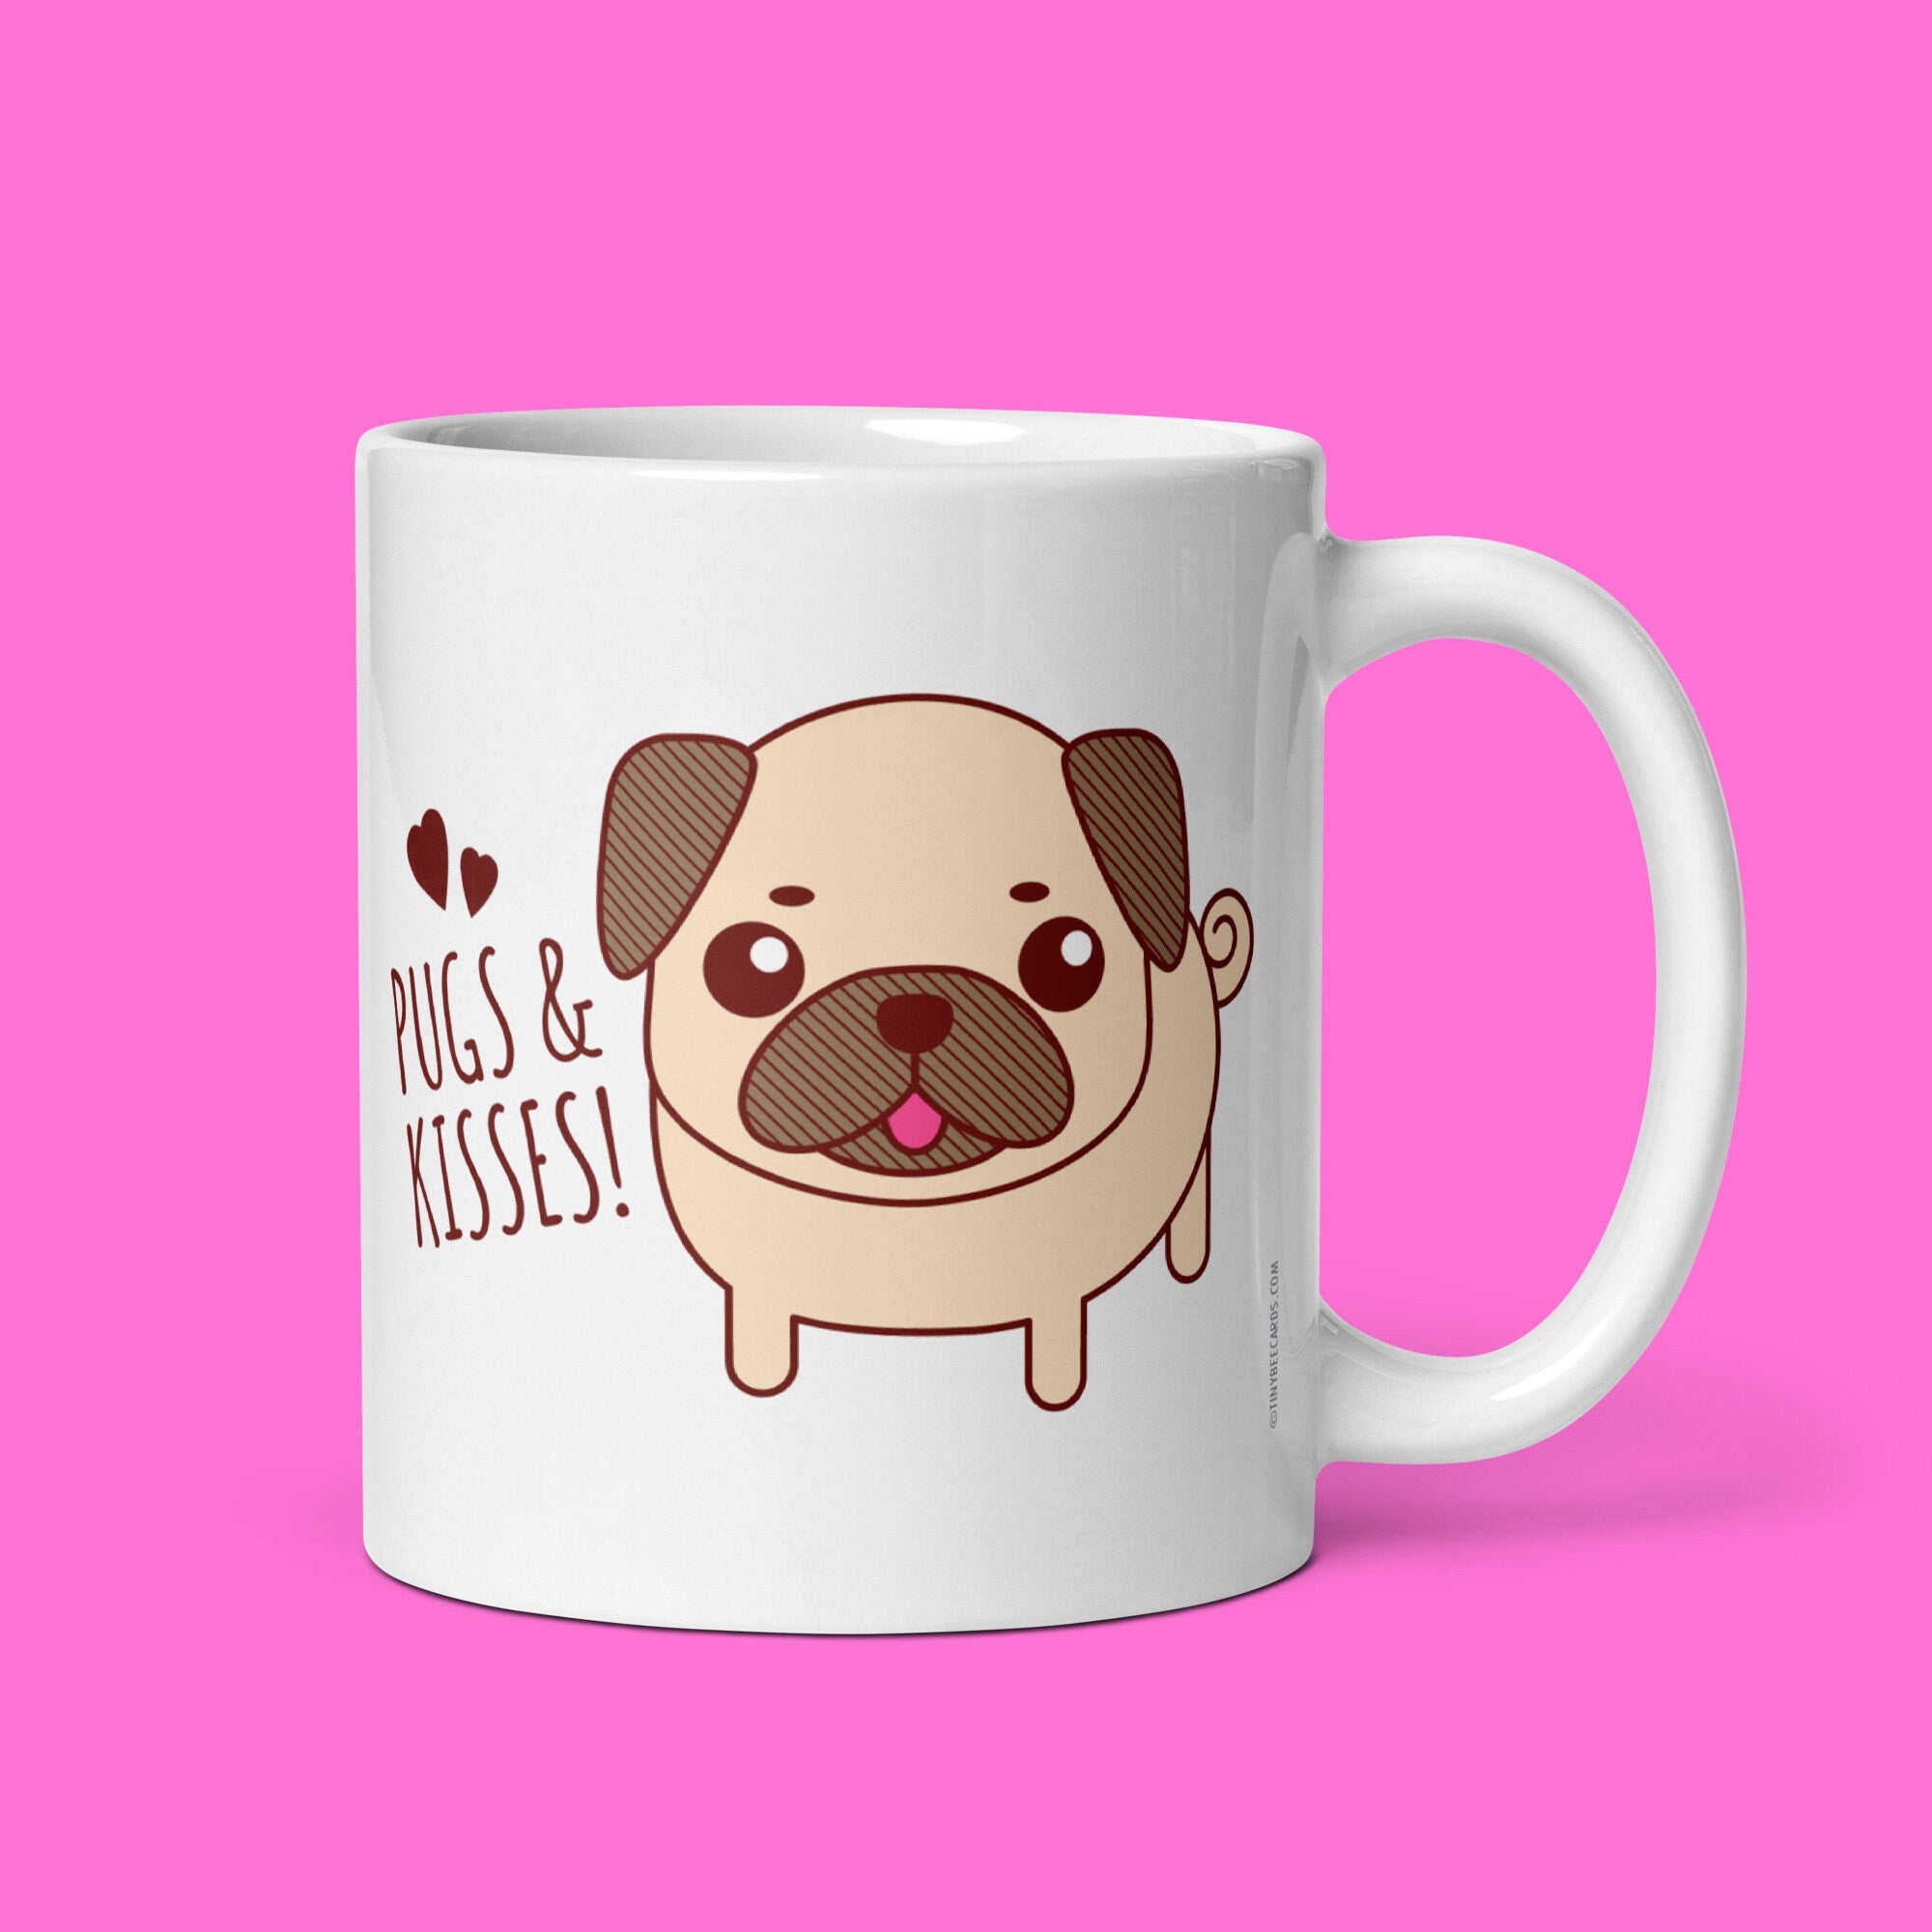 Funny Pug Mug "Pugs & Kisses" - Pug gifts, funny coffee mug, gift for pug owner, funny puns, dog lovers, cute mug, quotes and sayings mug